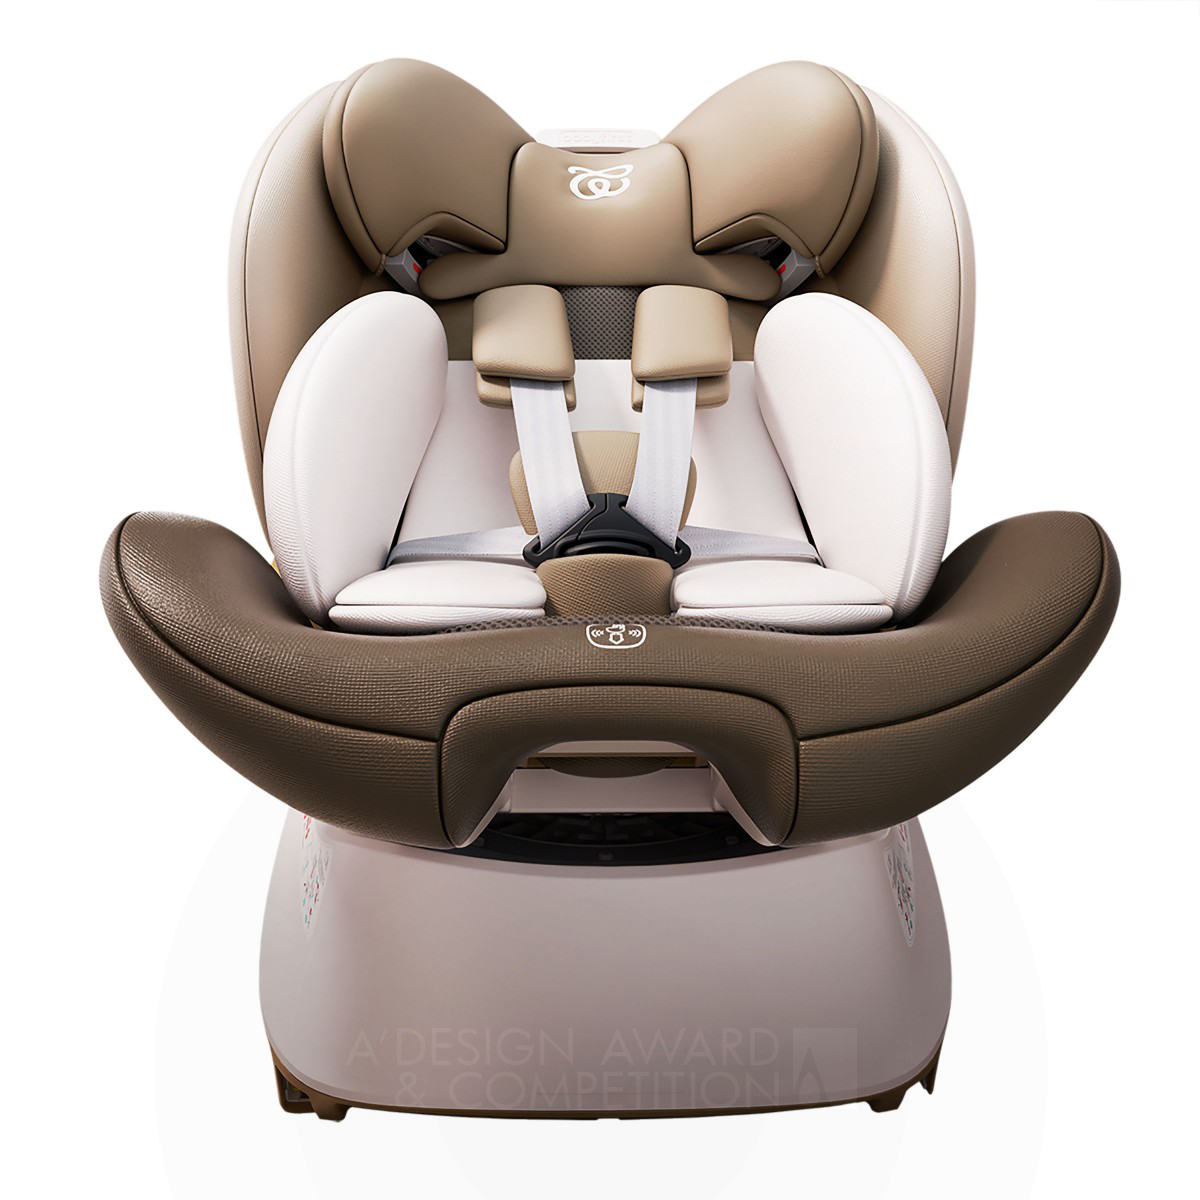 Babyfirst Genius Pro R156 <b>Safety Seats